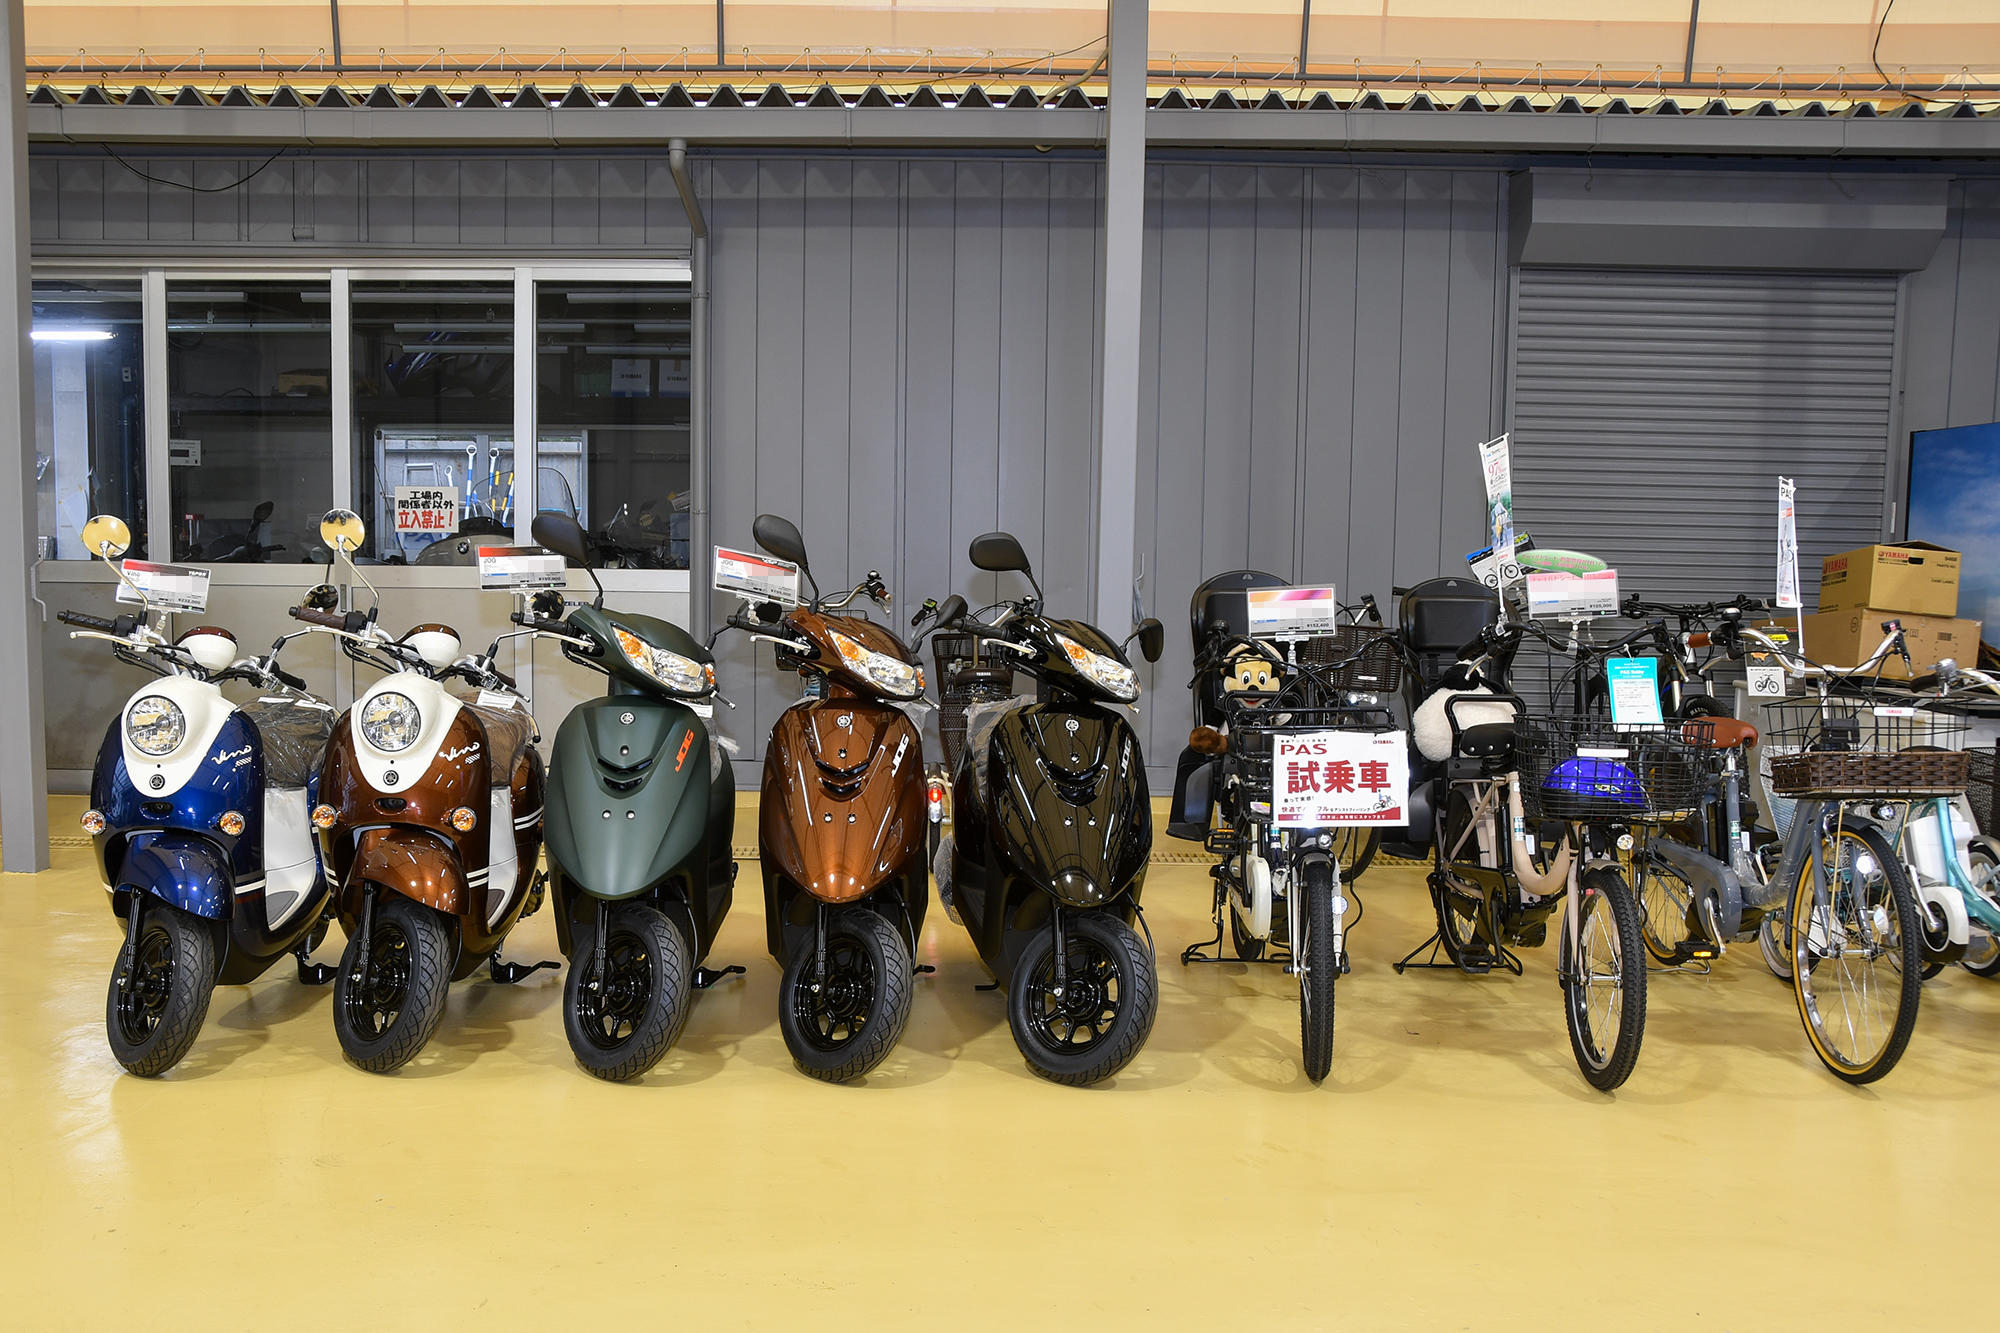 スポーツバイク専門店「YSP（ヤマハモーターサイクル・スポーツ・プラザ）」として、原付スクーターや電動アシスト自転車といったコミューターは、店舗奥のスペースに区分けて展示しています。